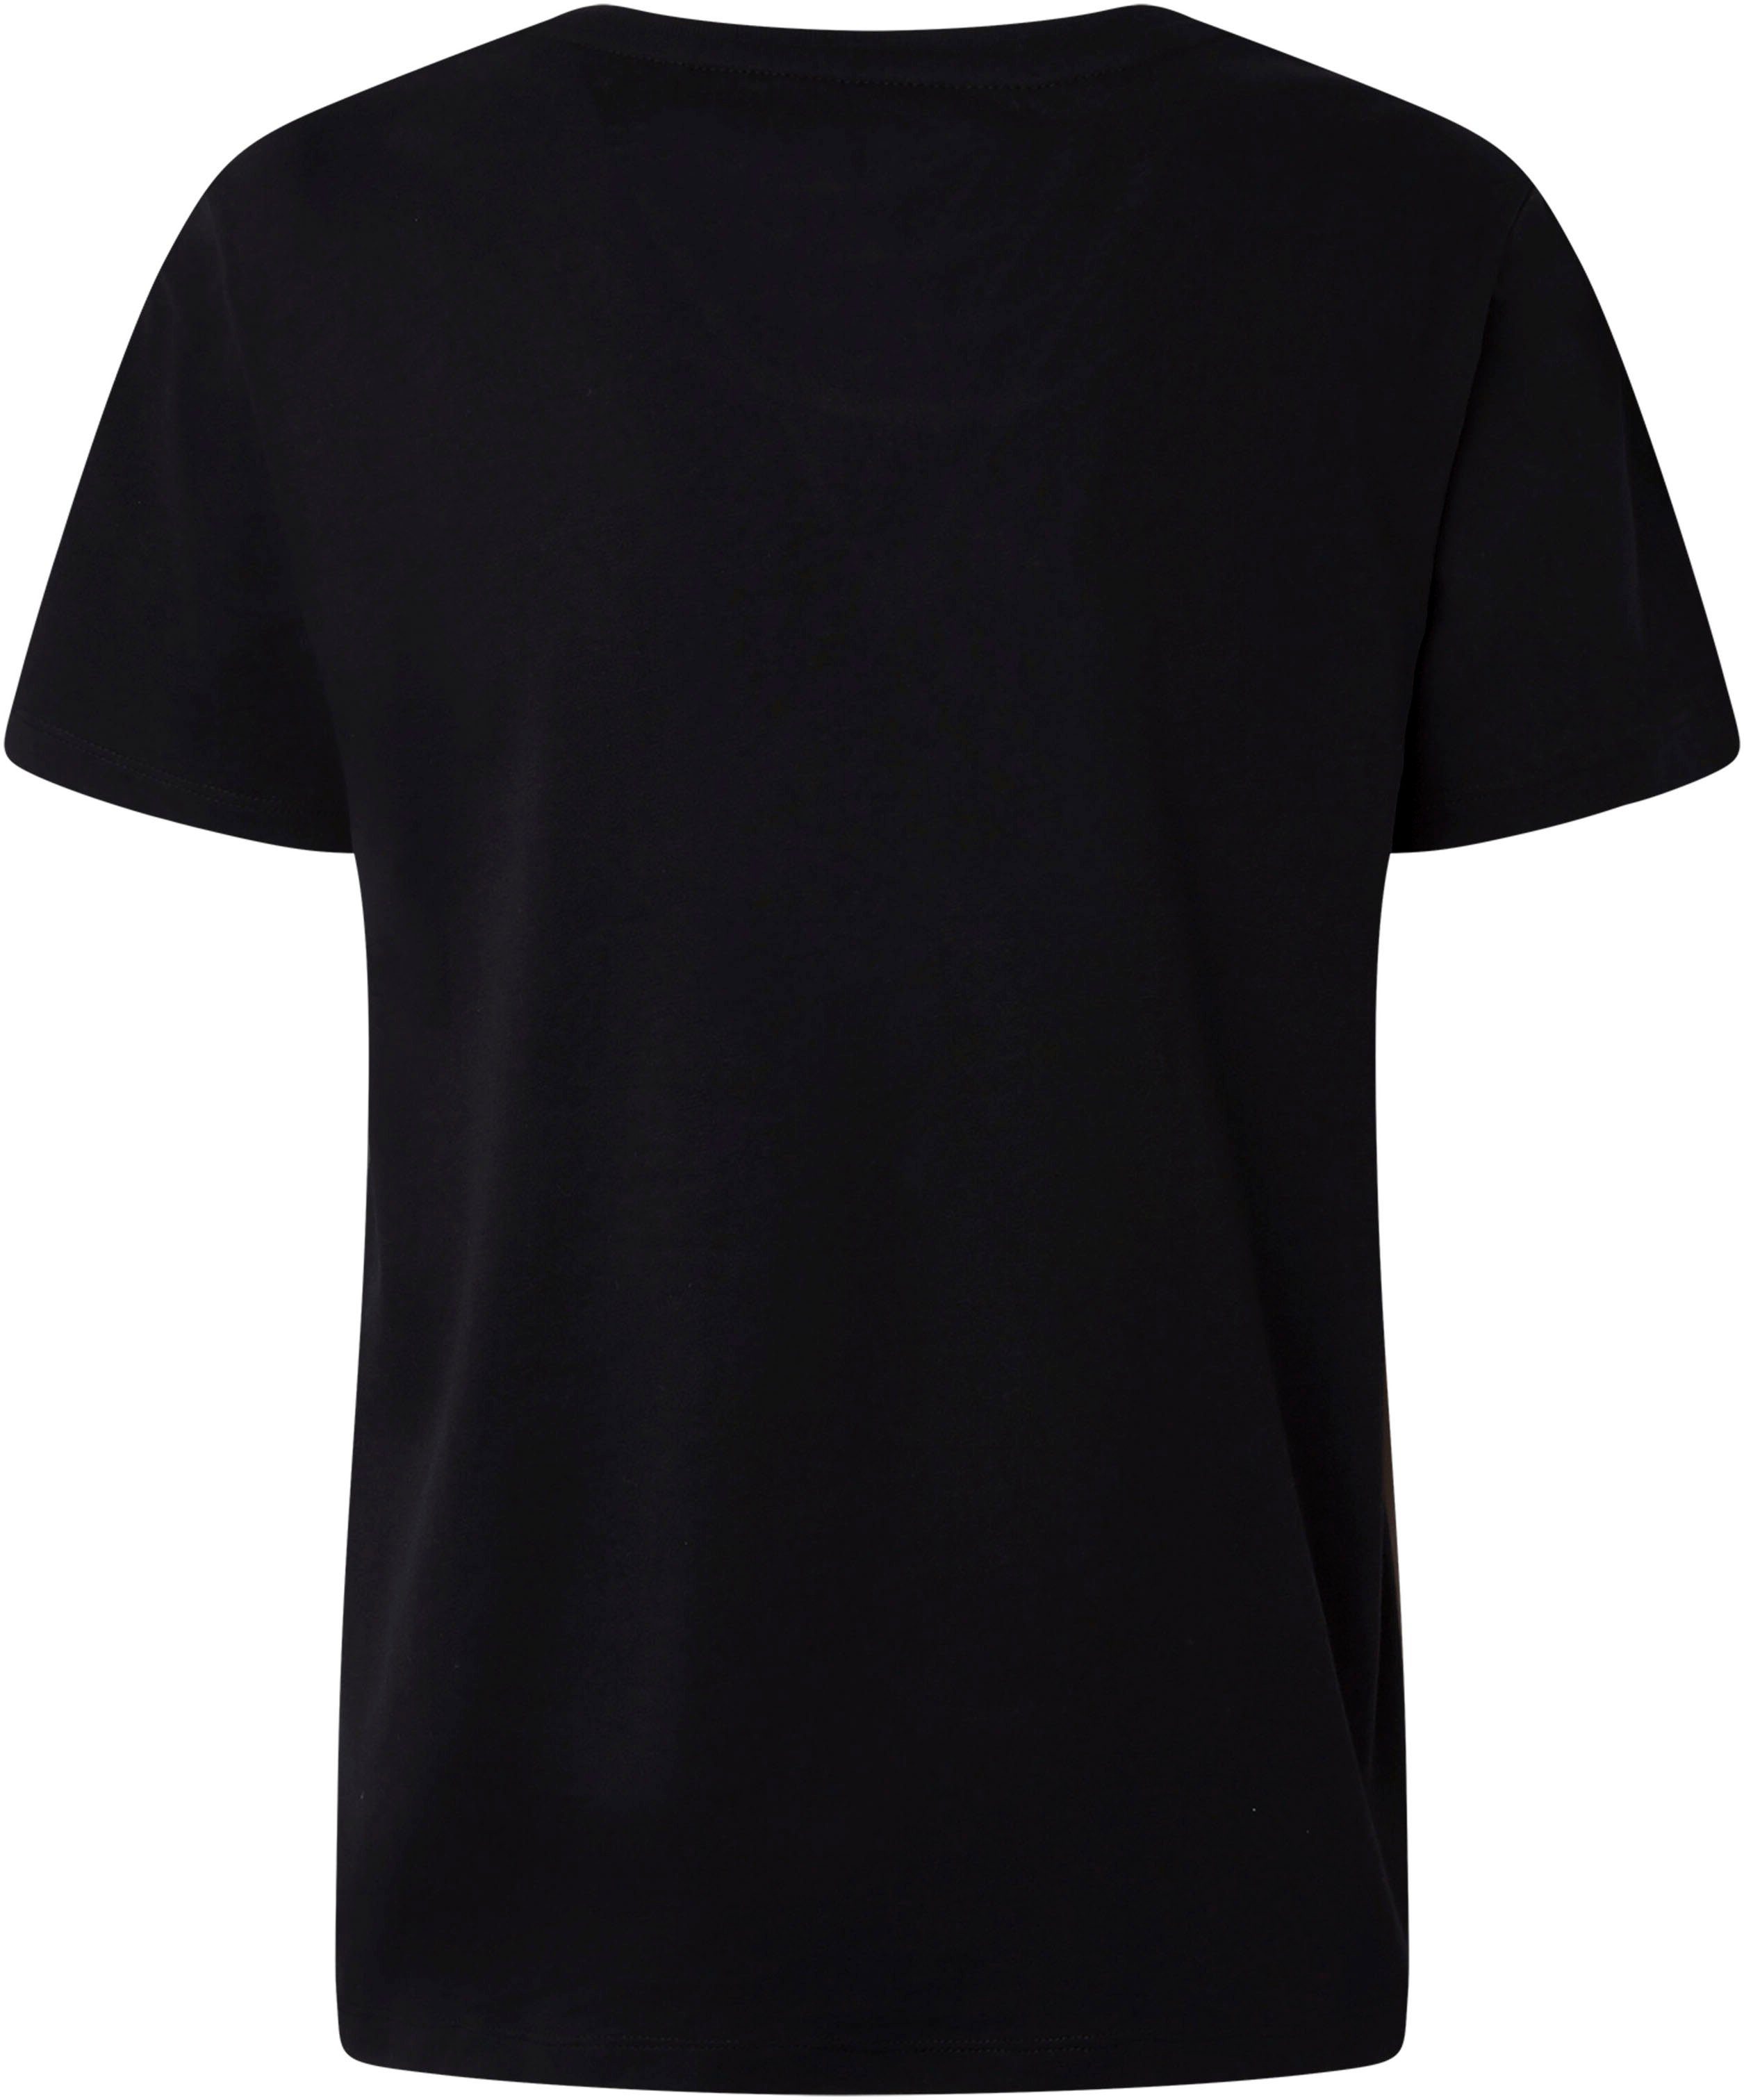 Pepe Jeans black Lali T-Shirt